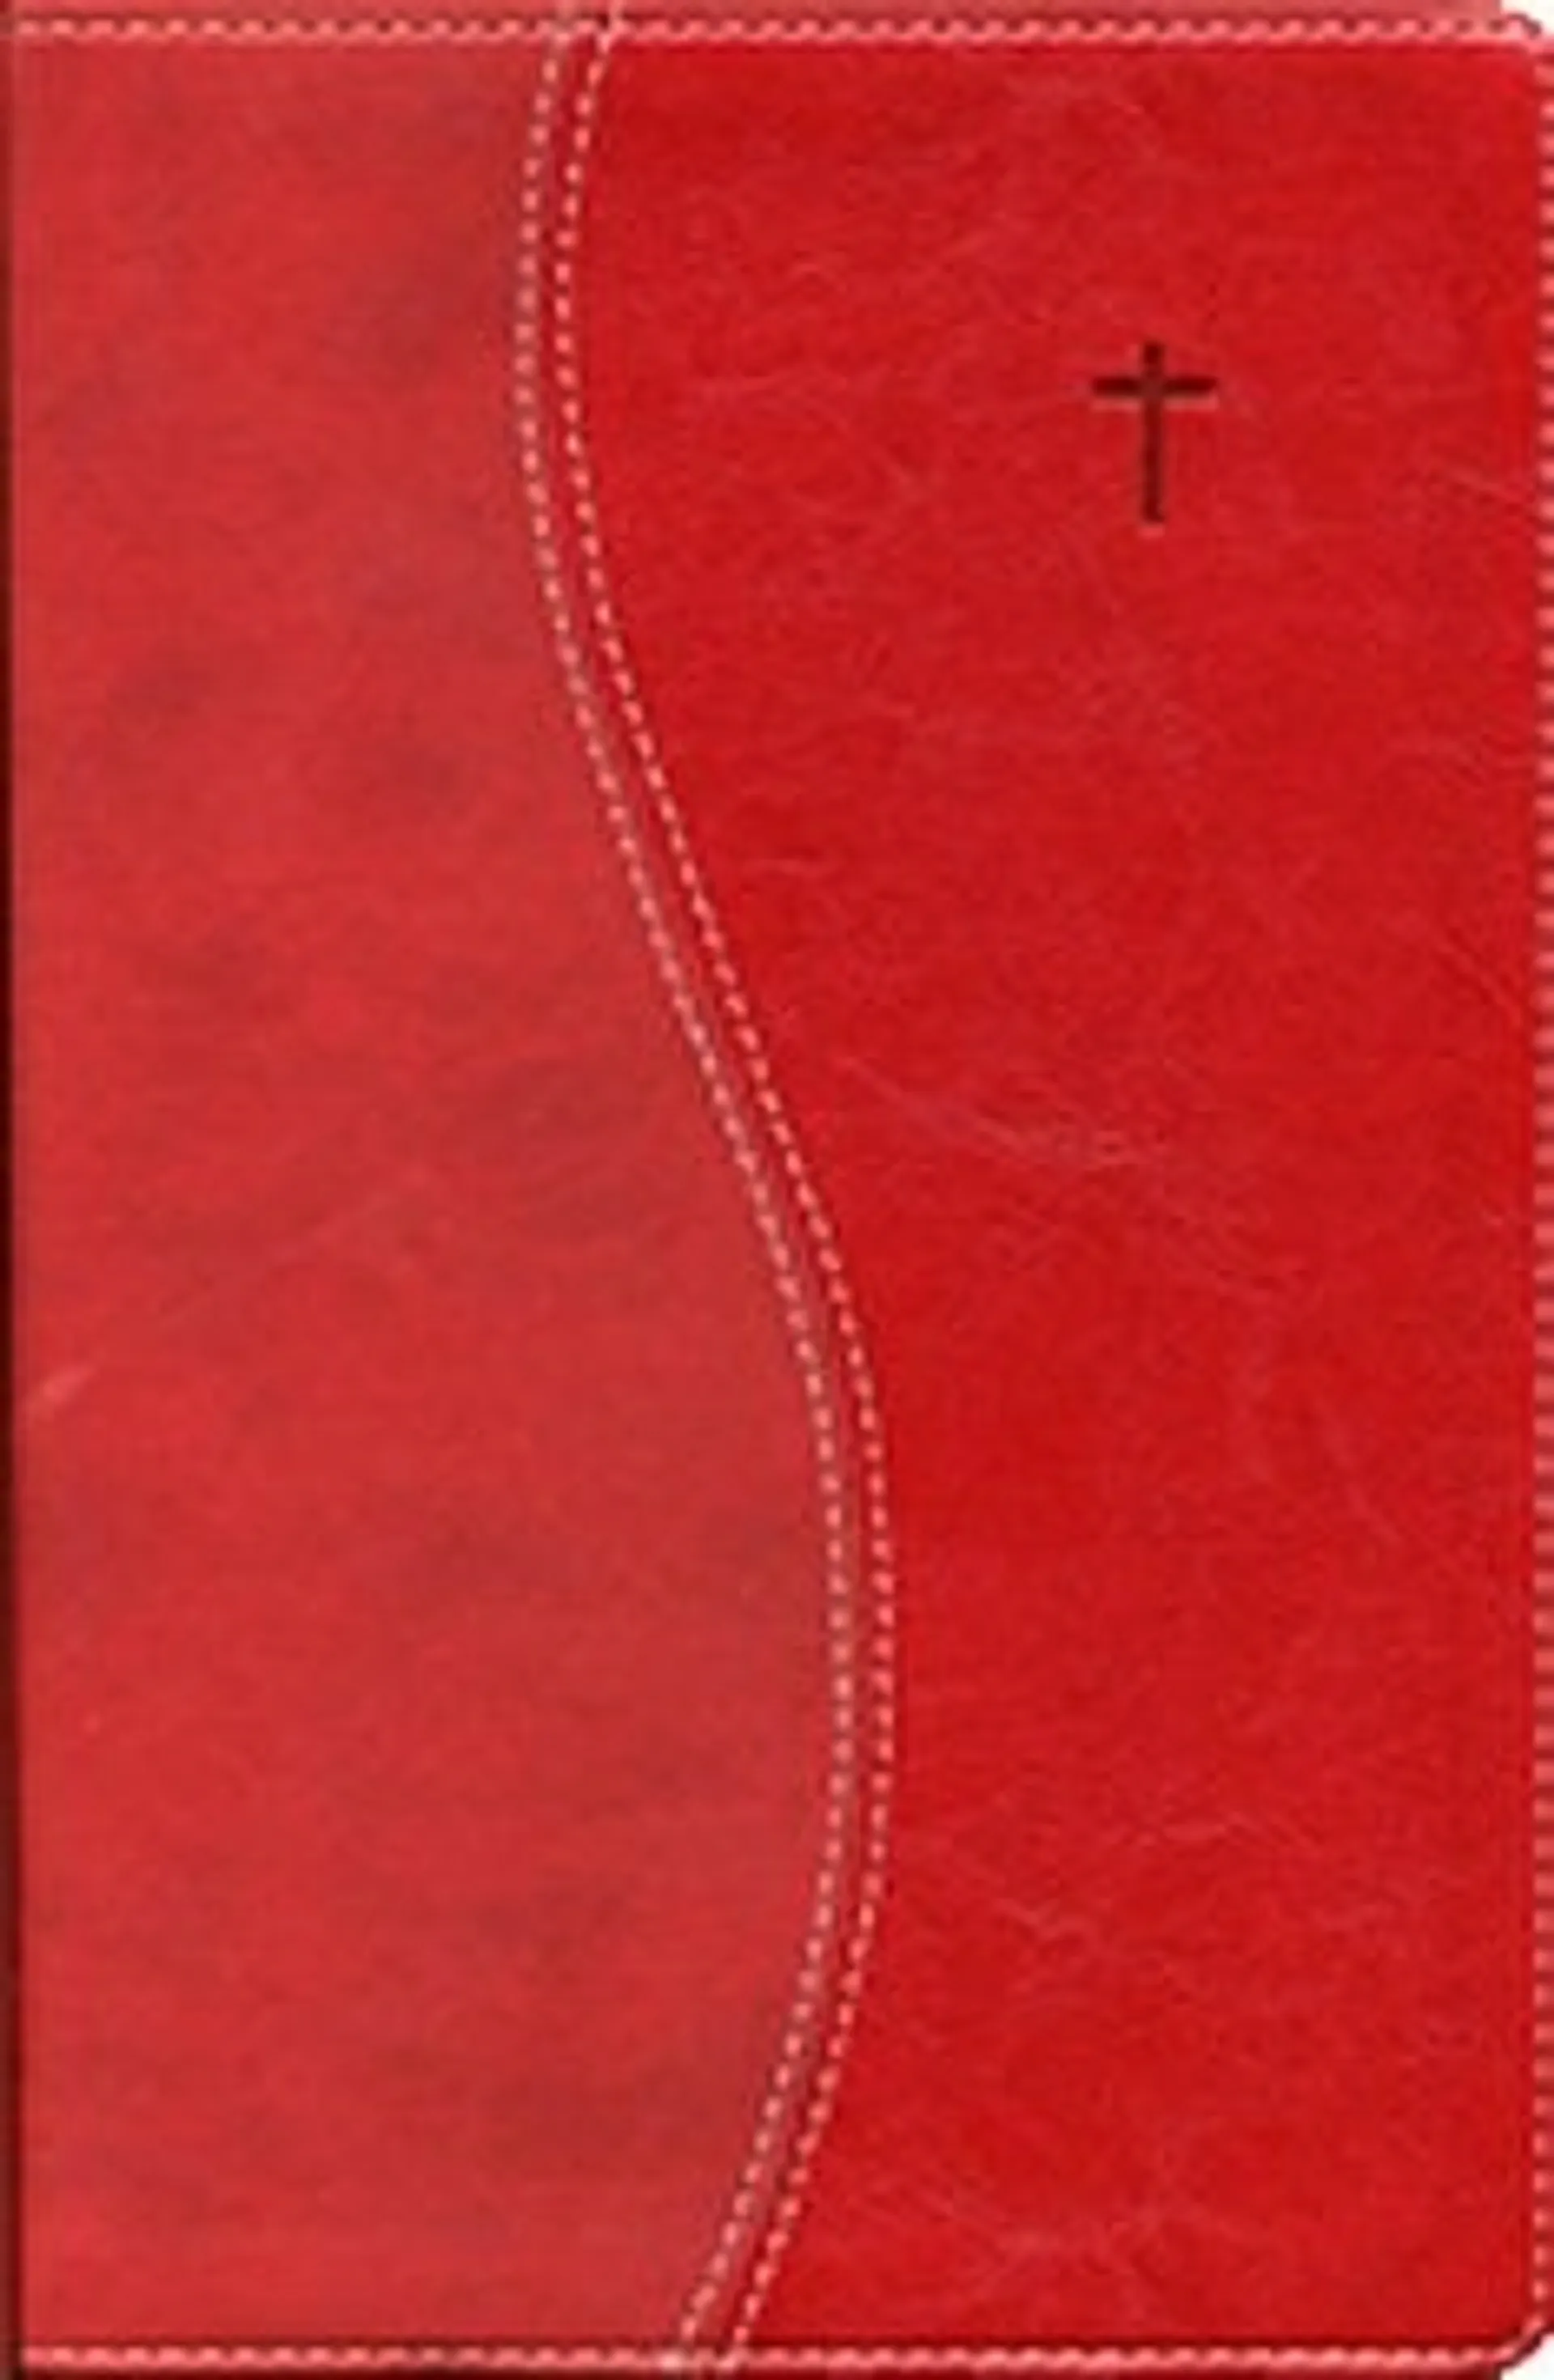 Raamattu (suomi-englanti, 160x235 mm, kultasyrjä, reunahakemisto, nahkajäljitelmä, punainen, New International Version -käännös)